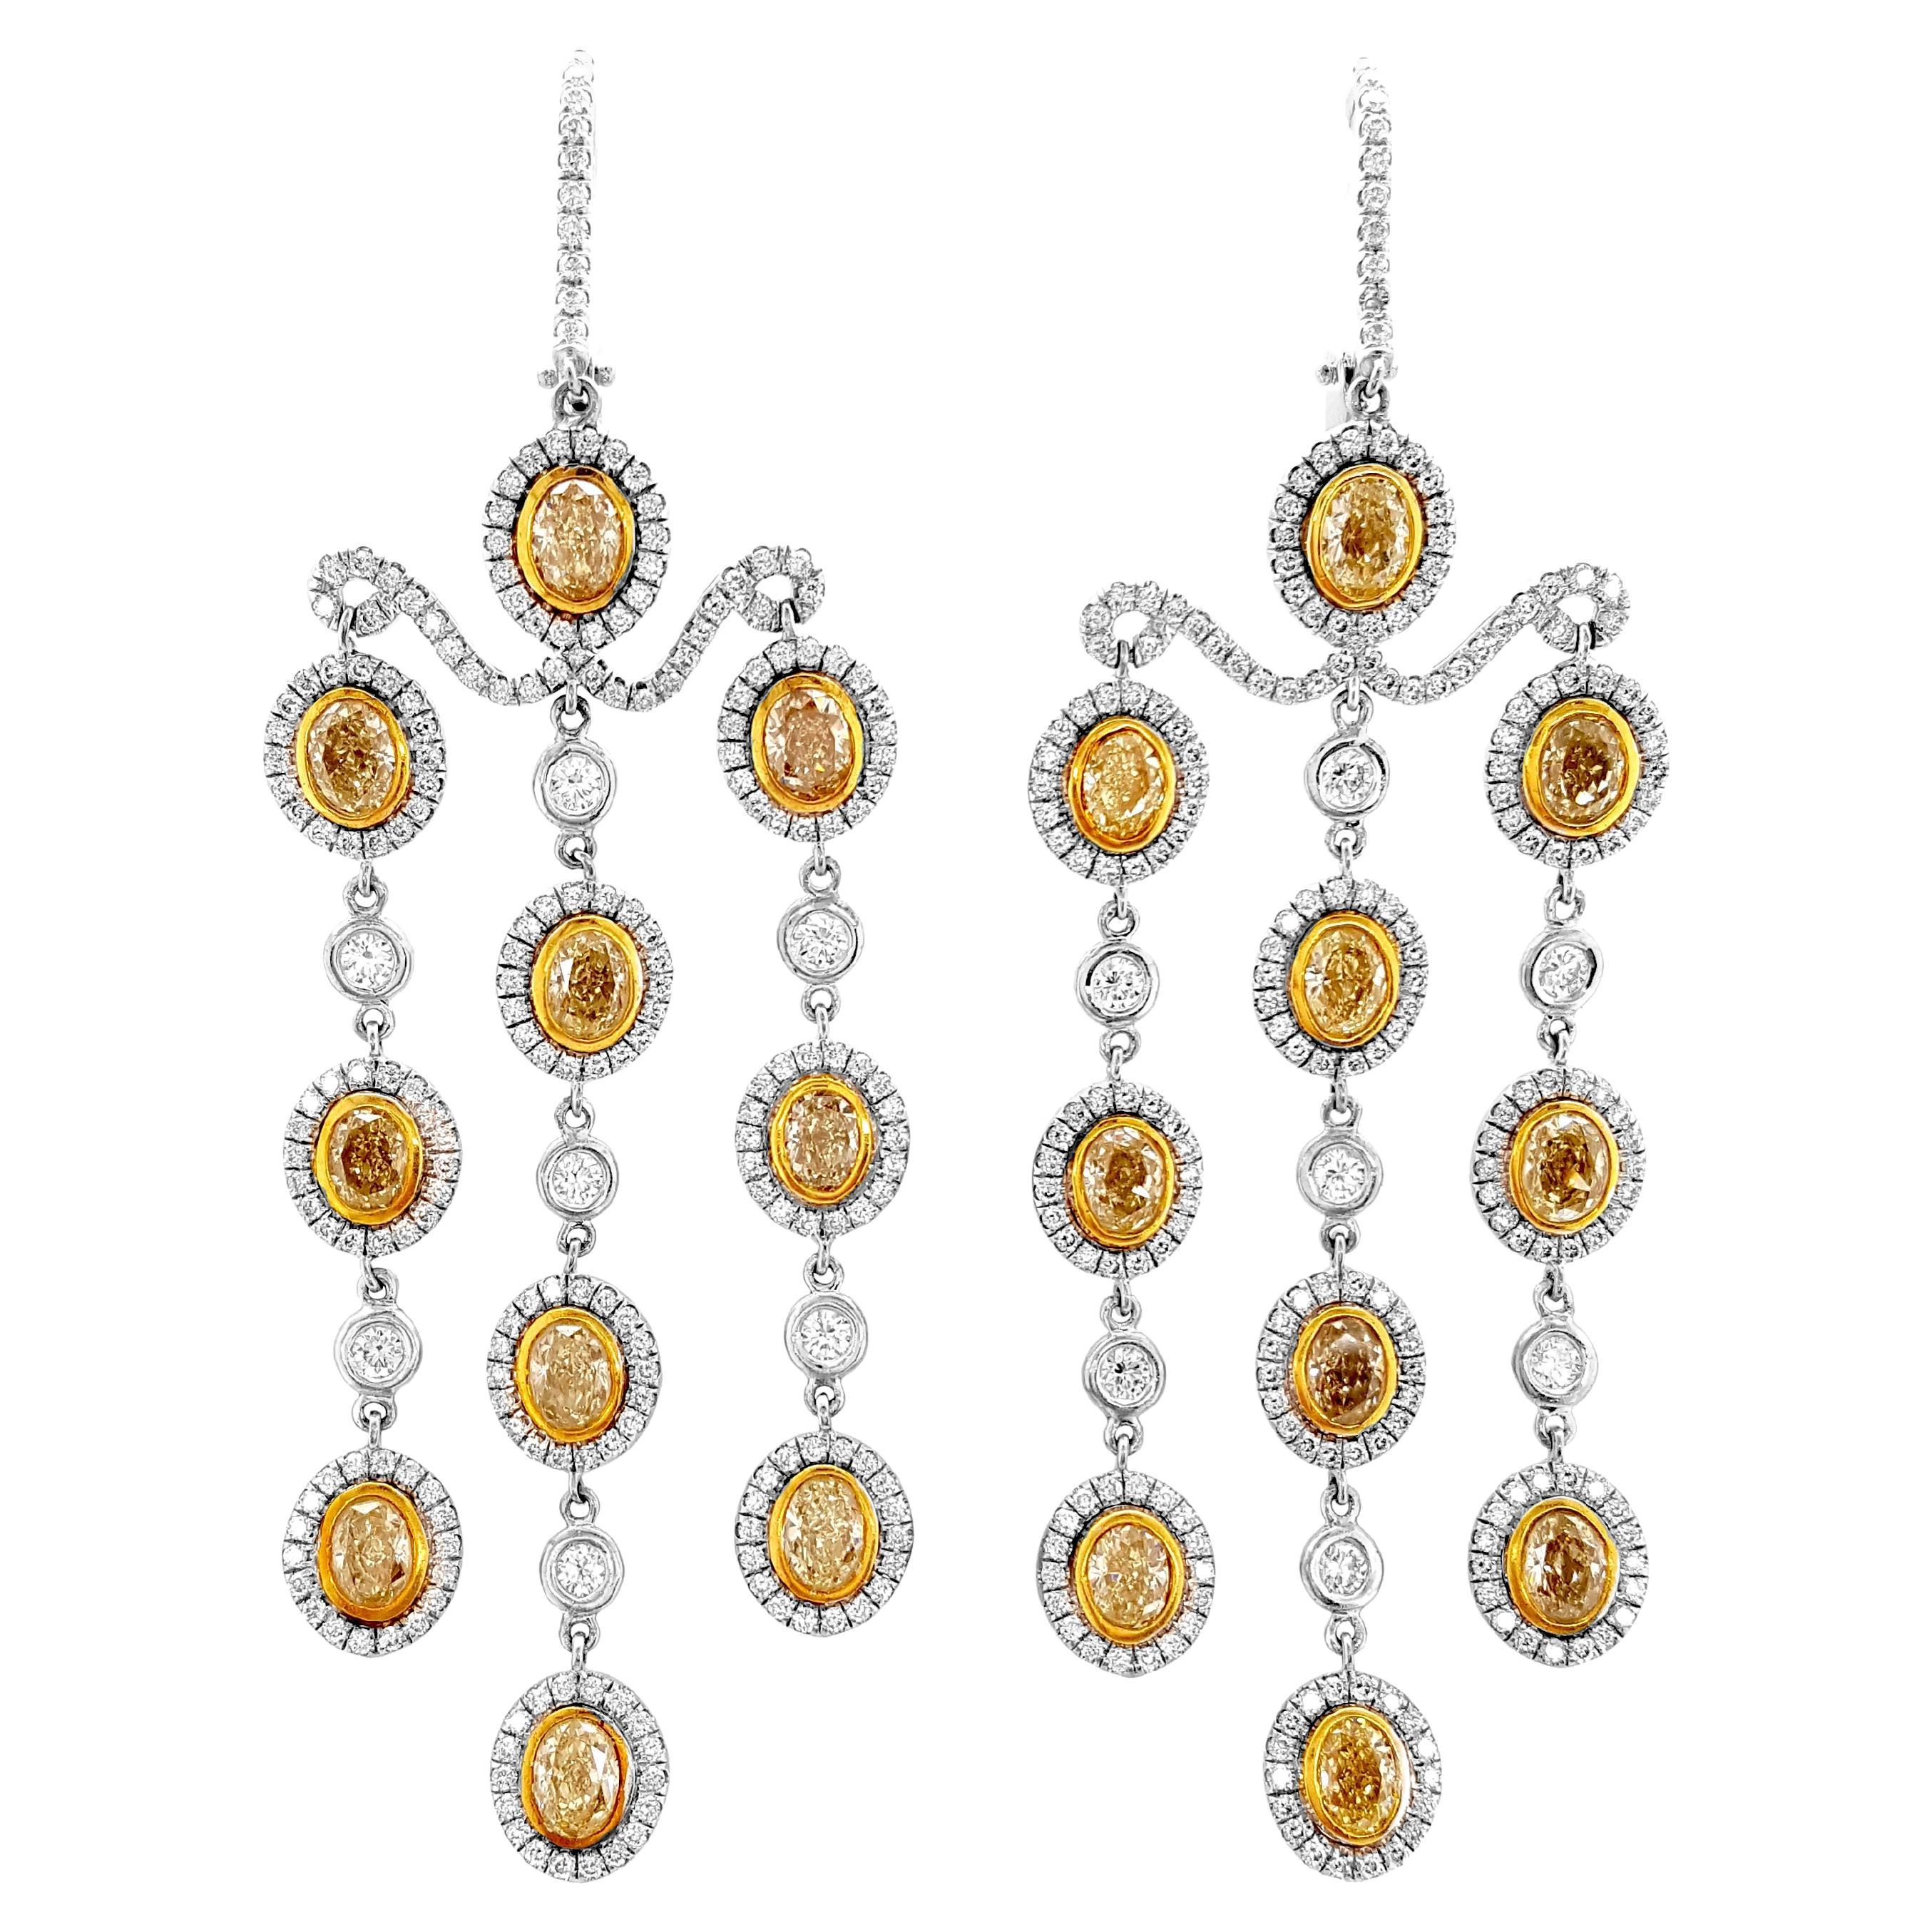 7 Karat gelbe und weiße Diamant-Kronleuchter-Ohrringe aus Weißgold.